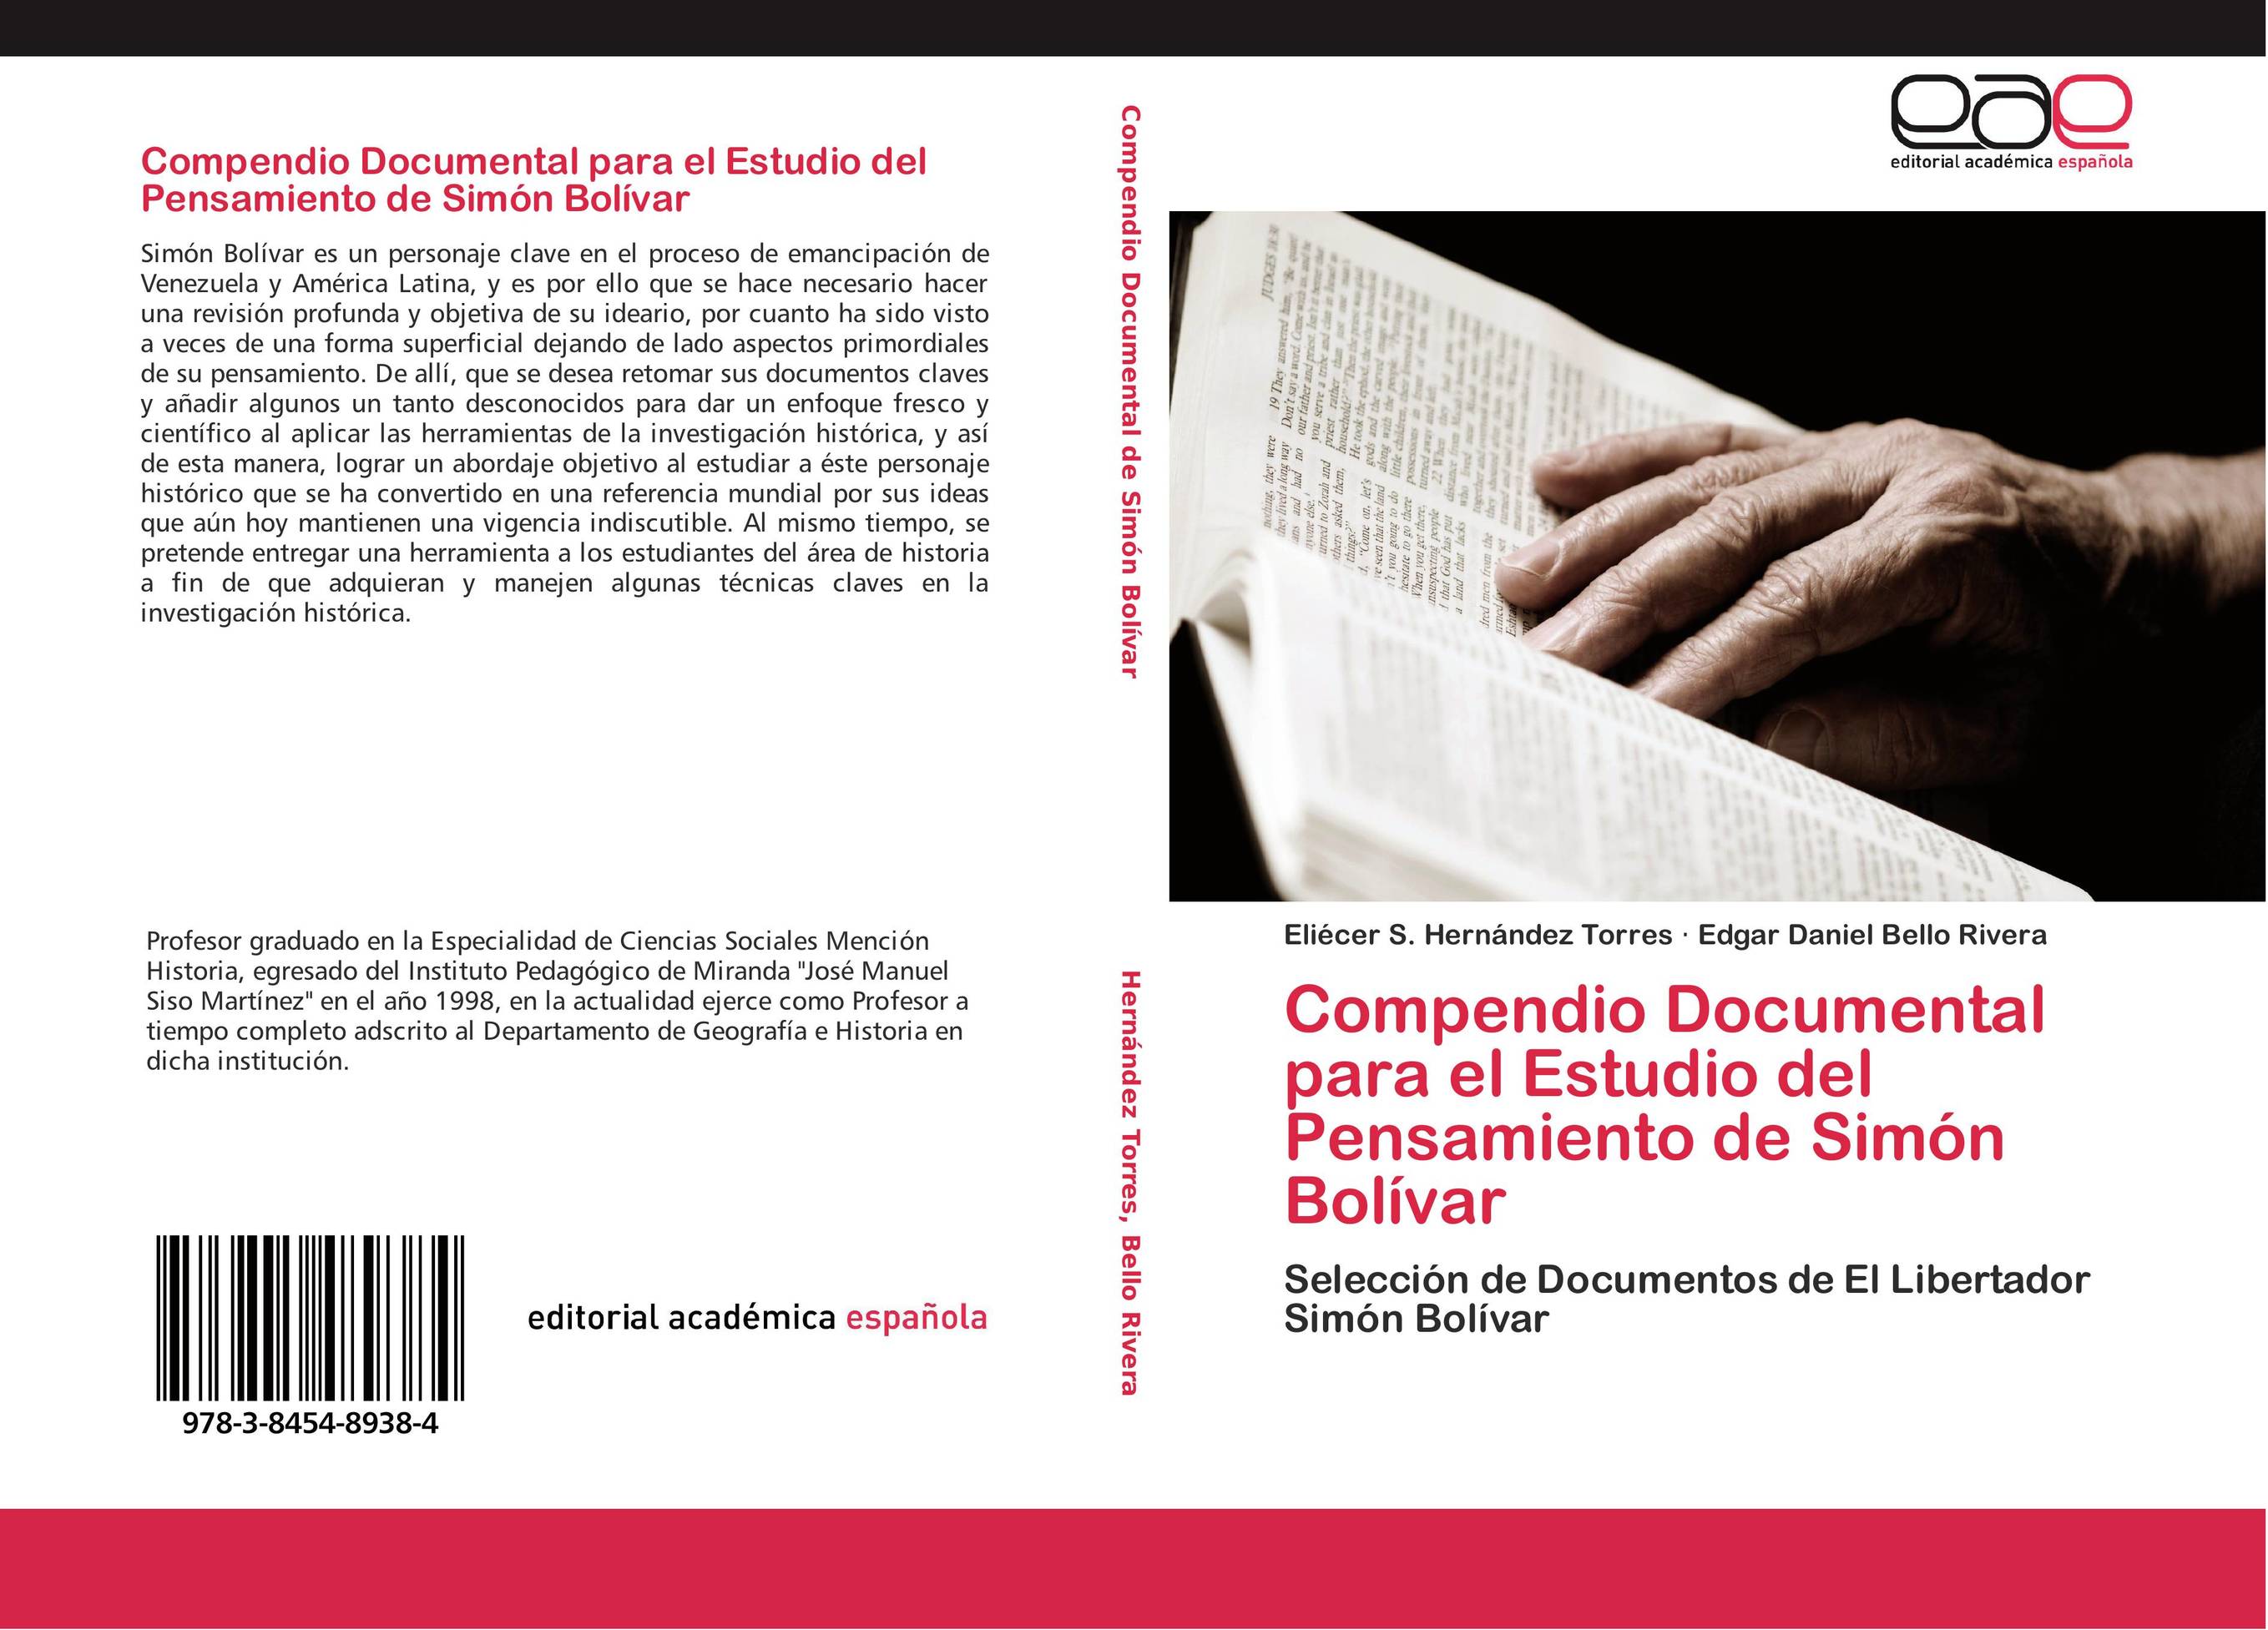 Compendio Documental para el Estudio del Pensamiento de Simón Bolívar